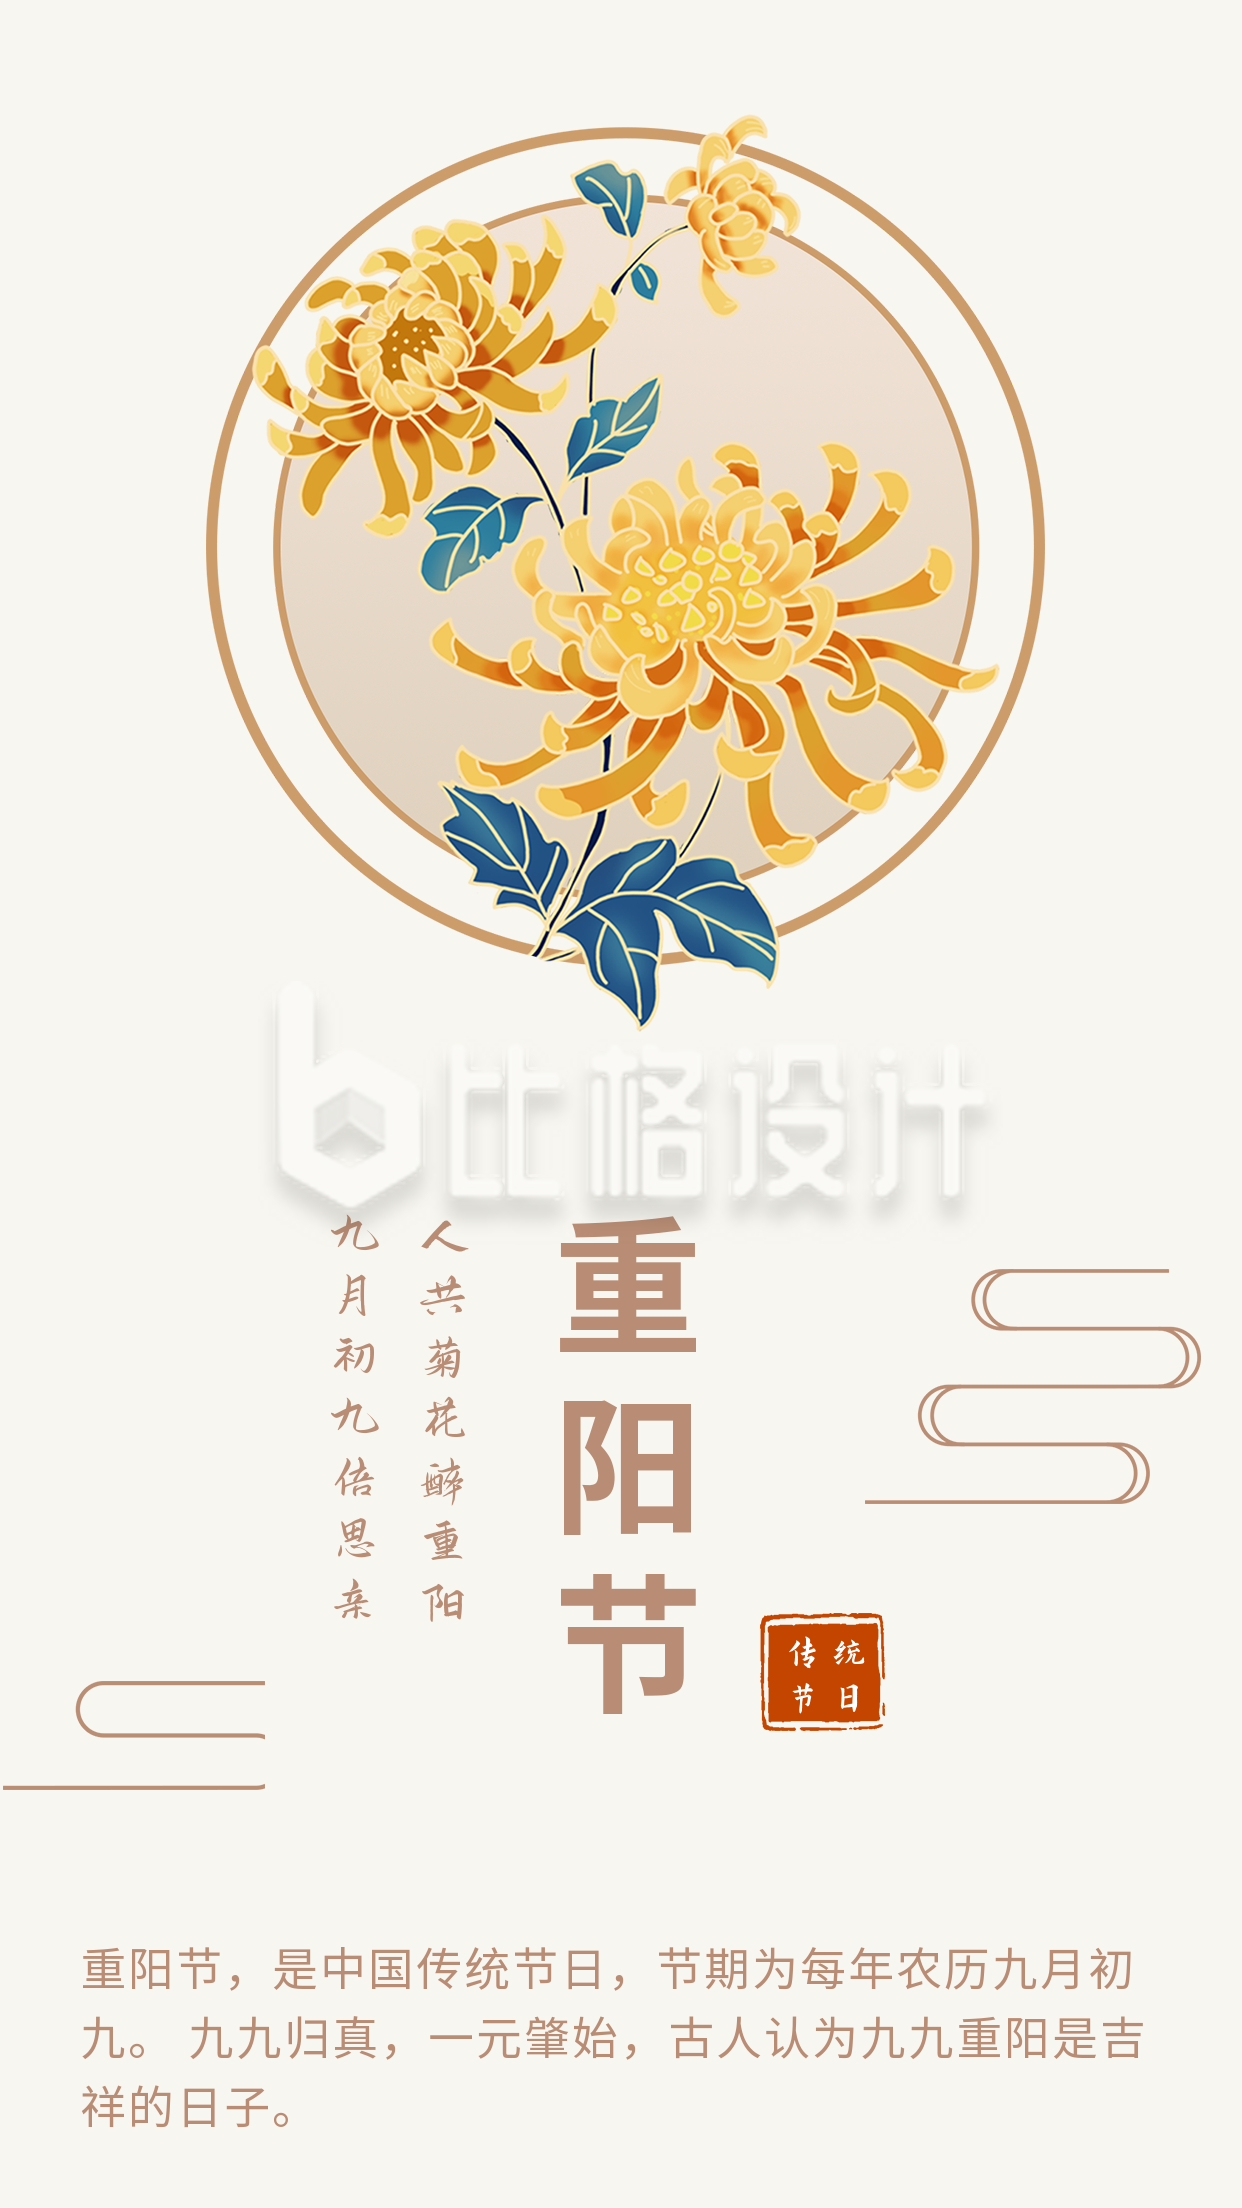 中国传统节日重阳节竖版配图